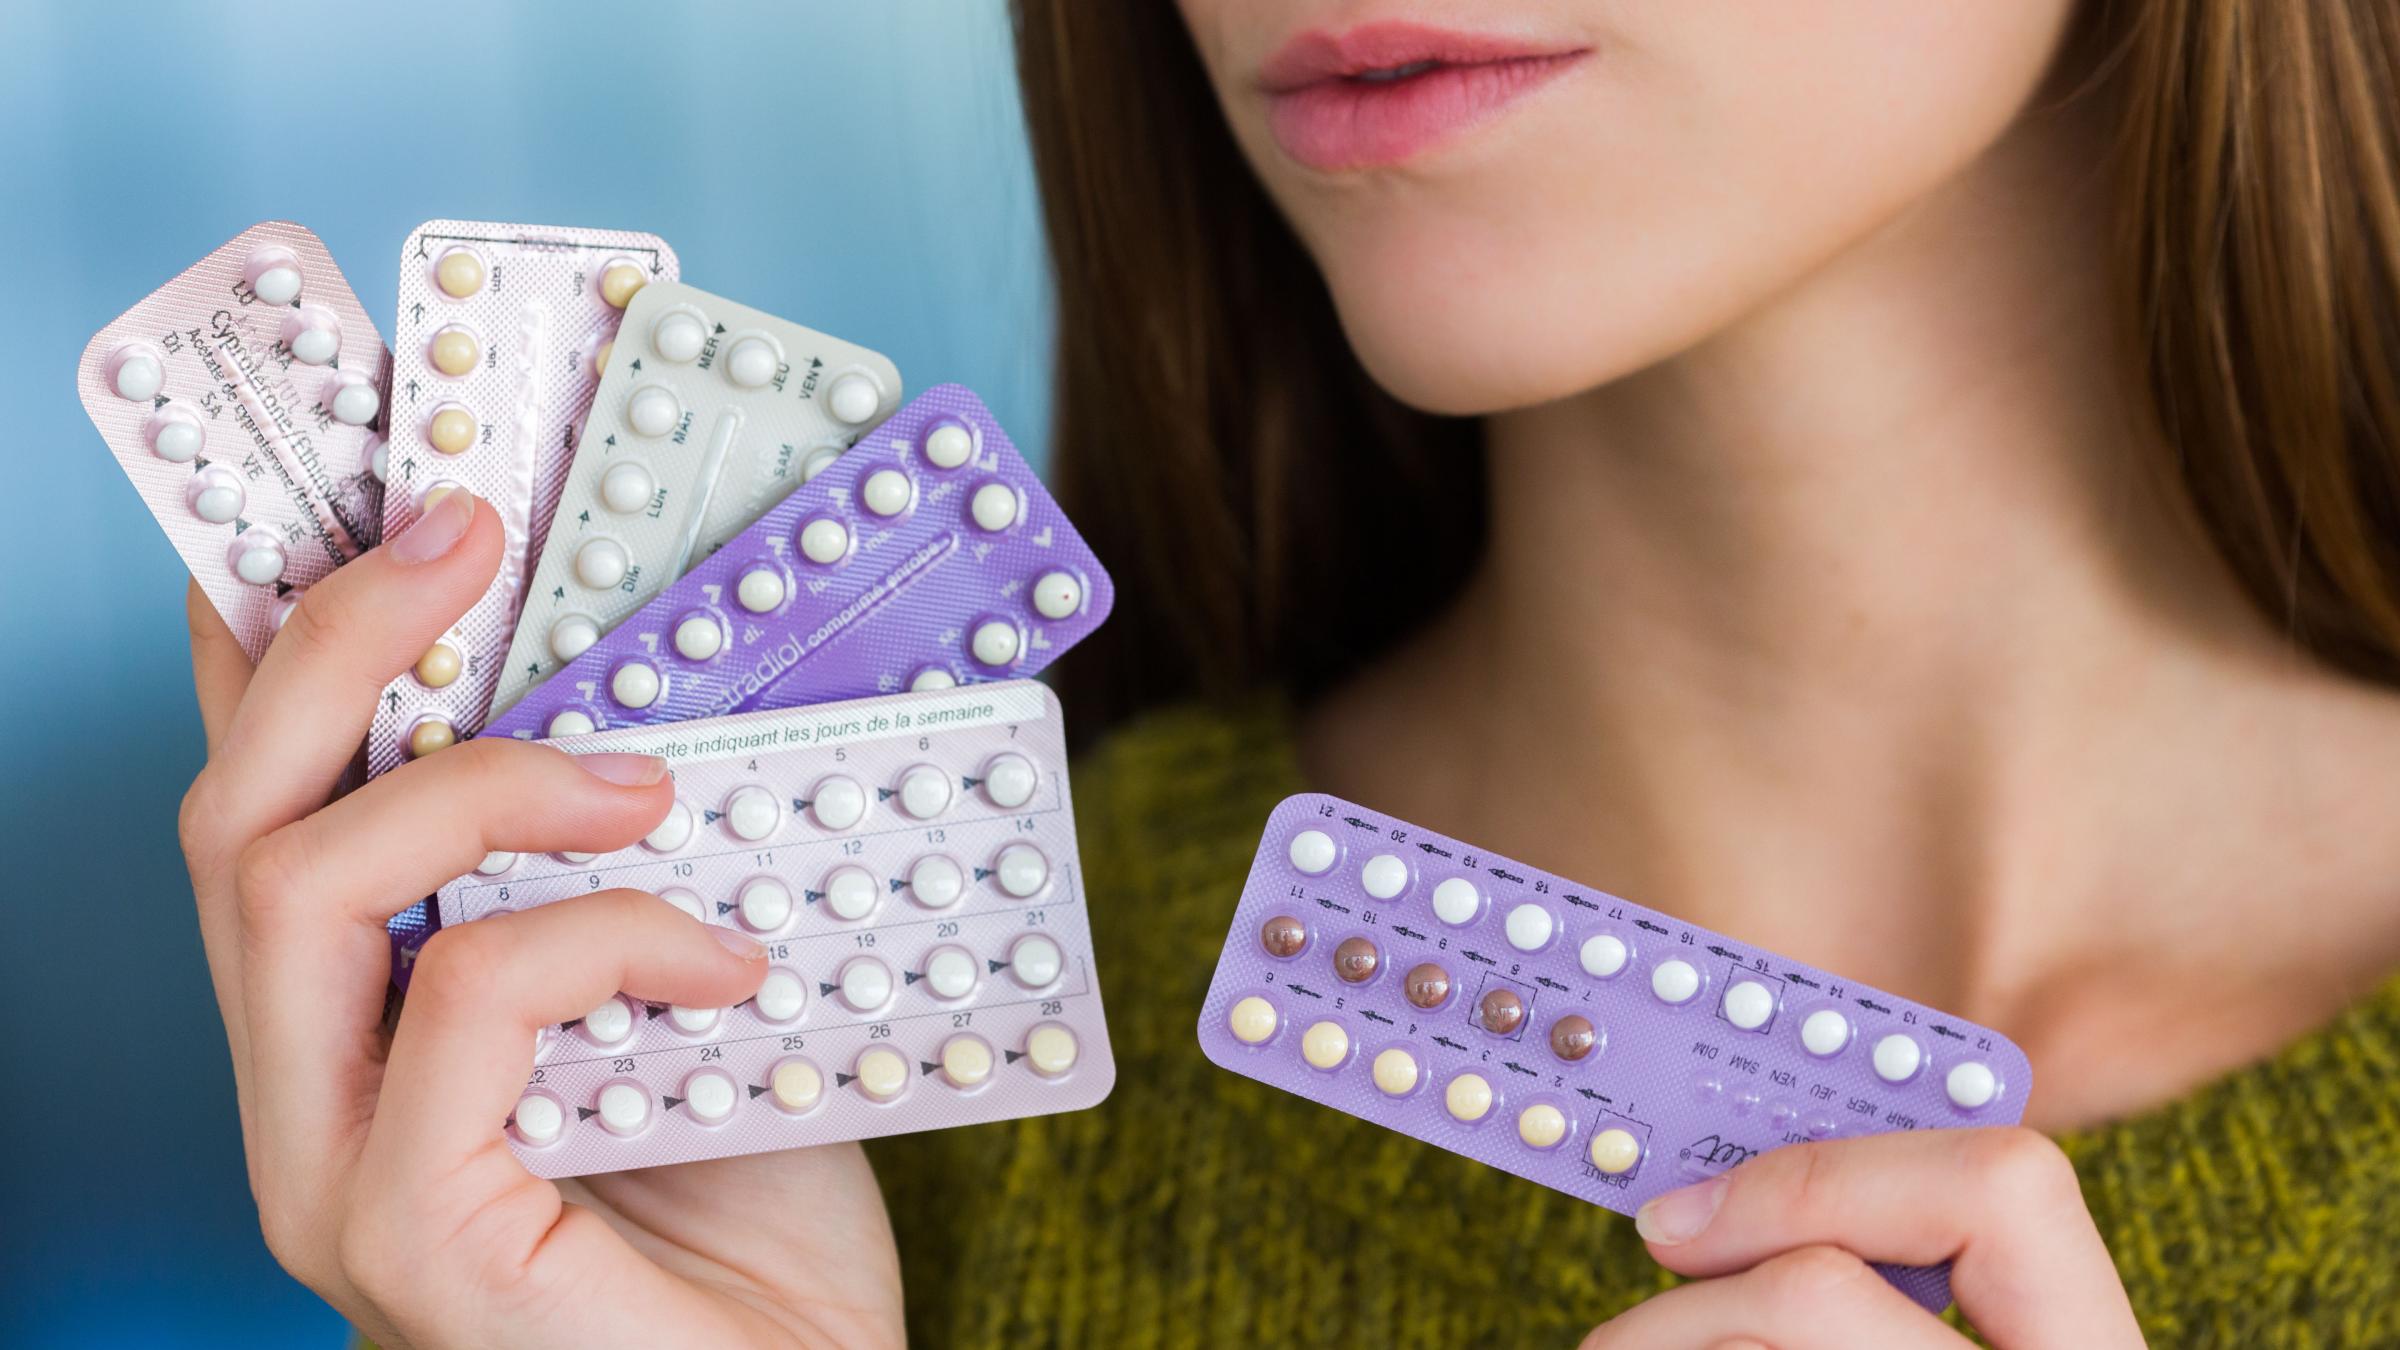 гормональные методы контрацепции картинка